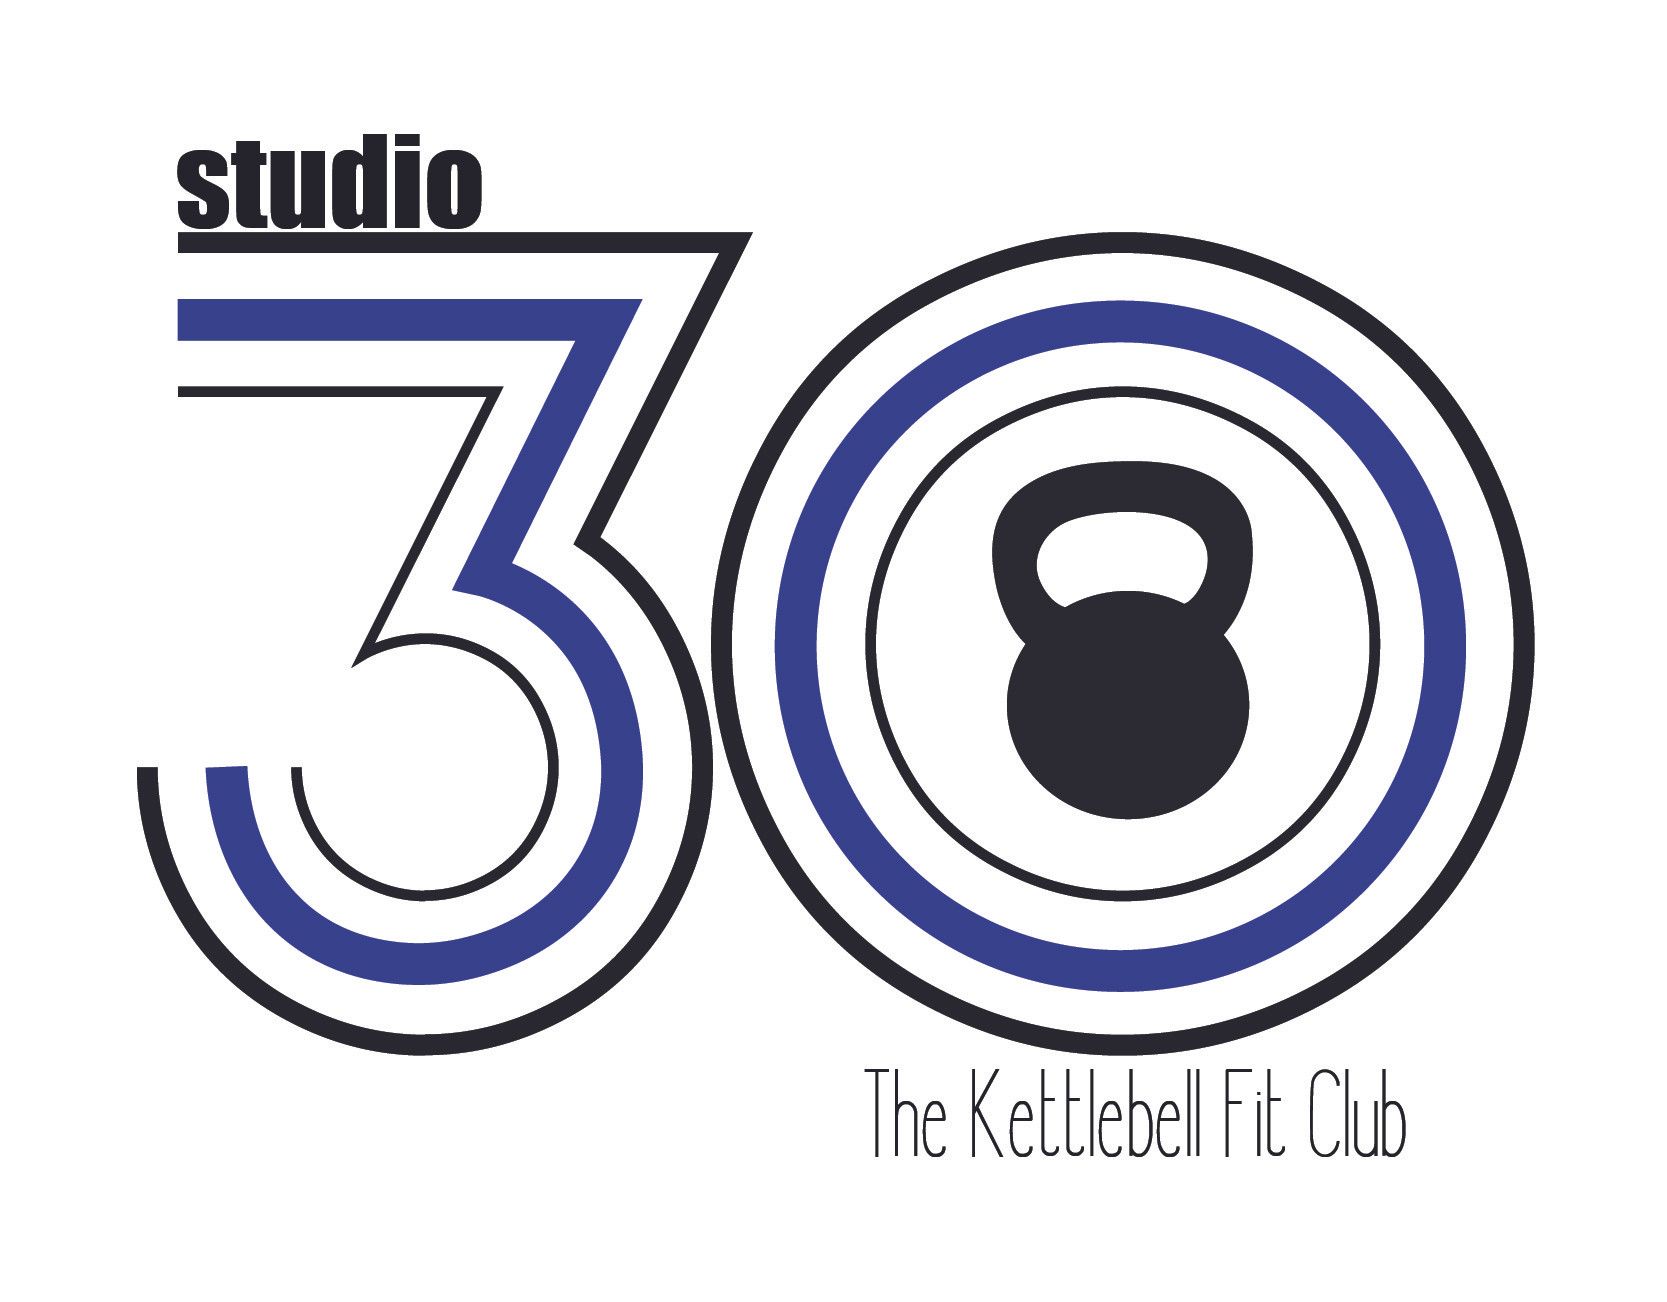 Studio 30 Franchising, LLC